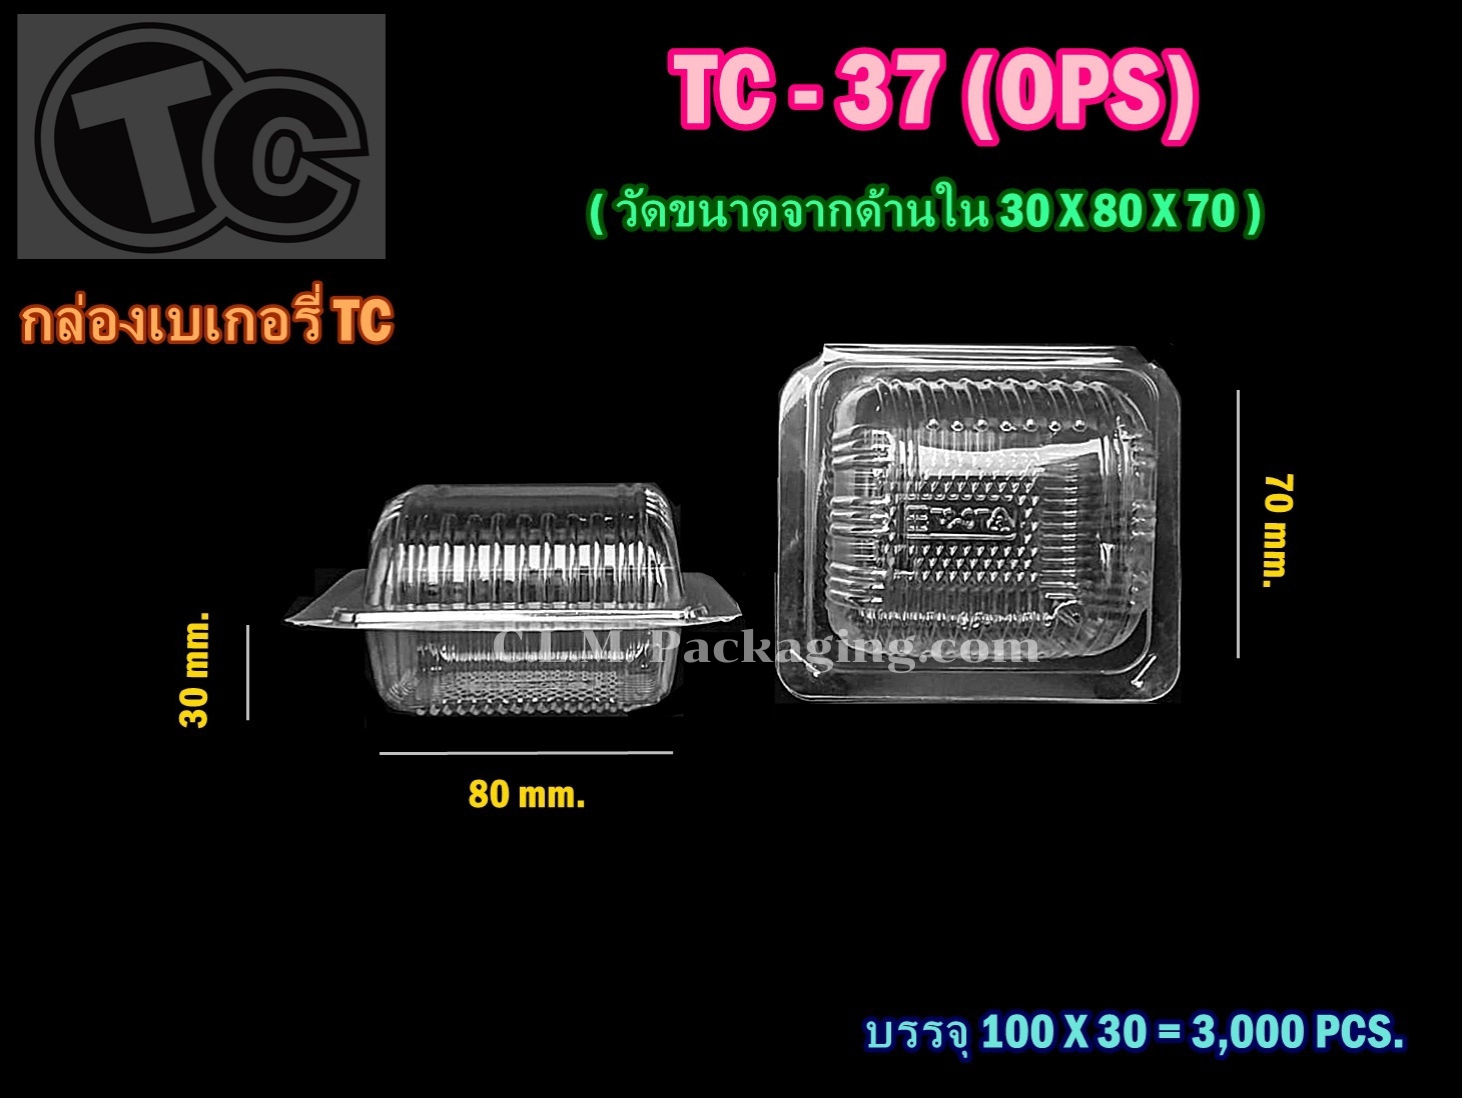 กล่อง OPS TC-37